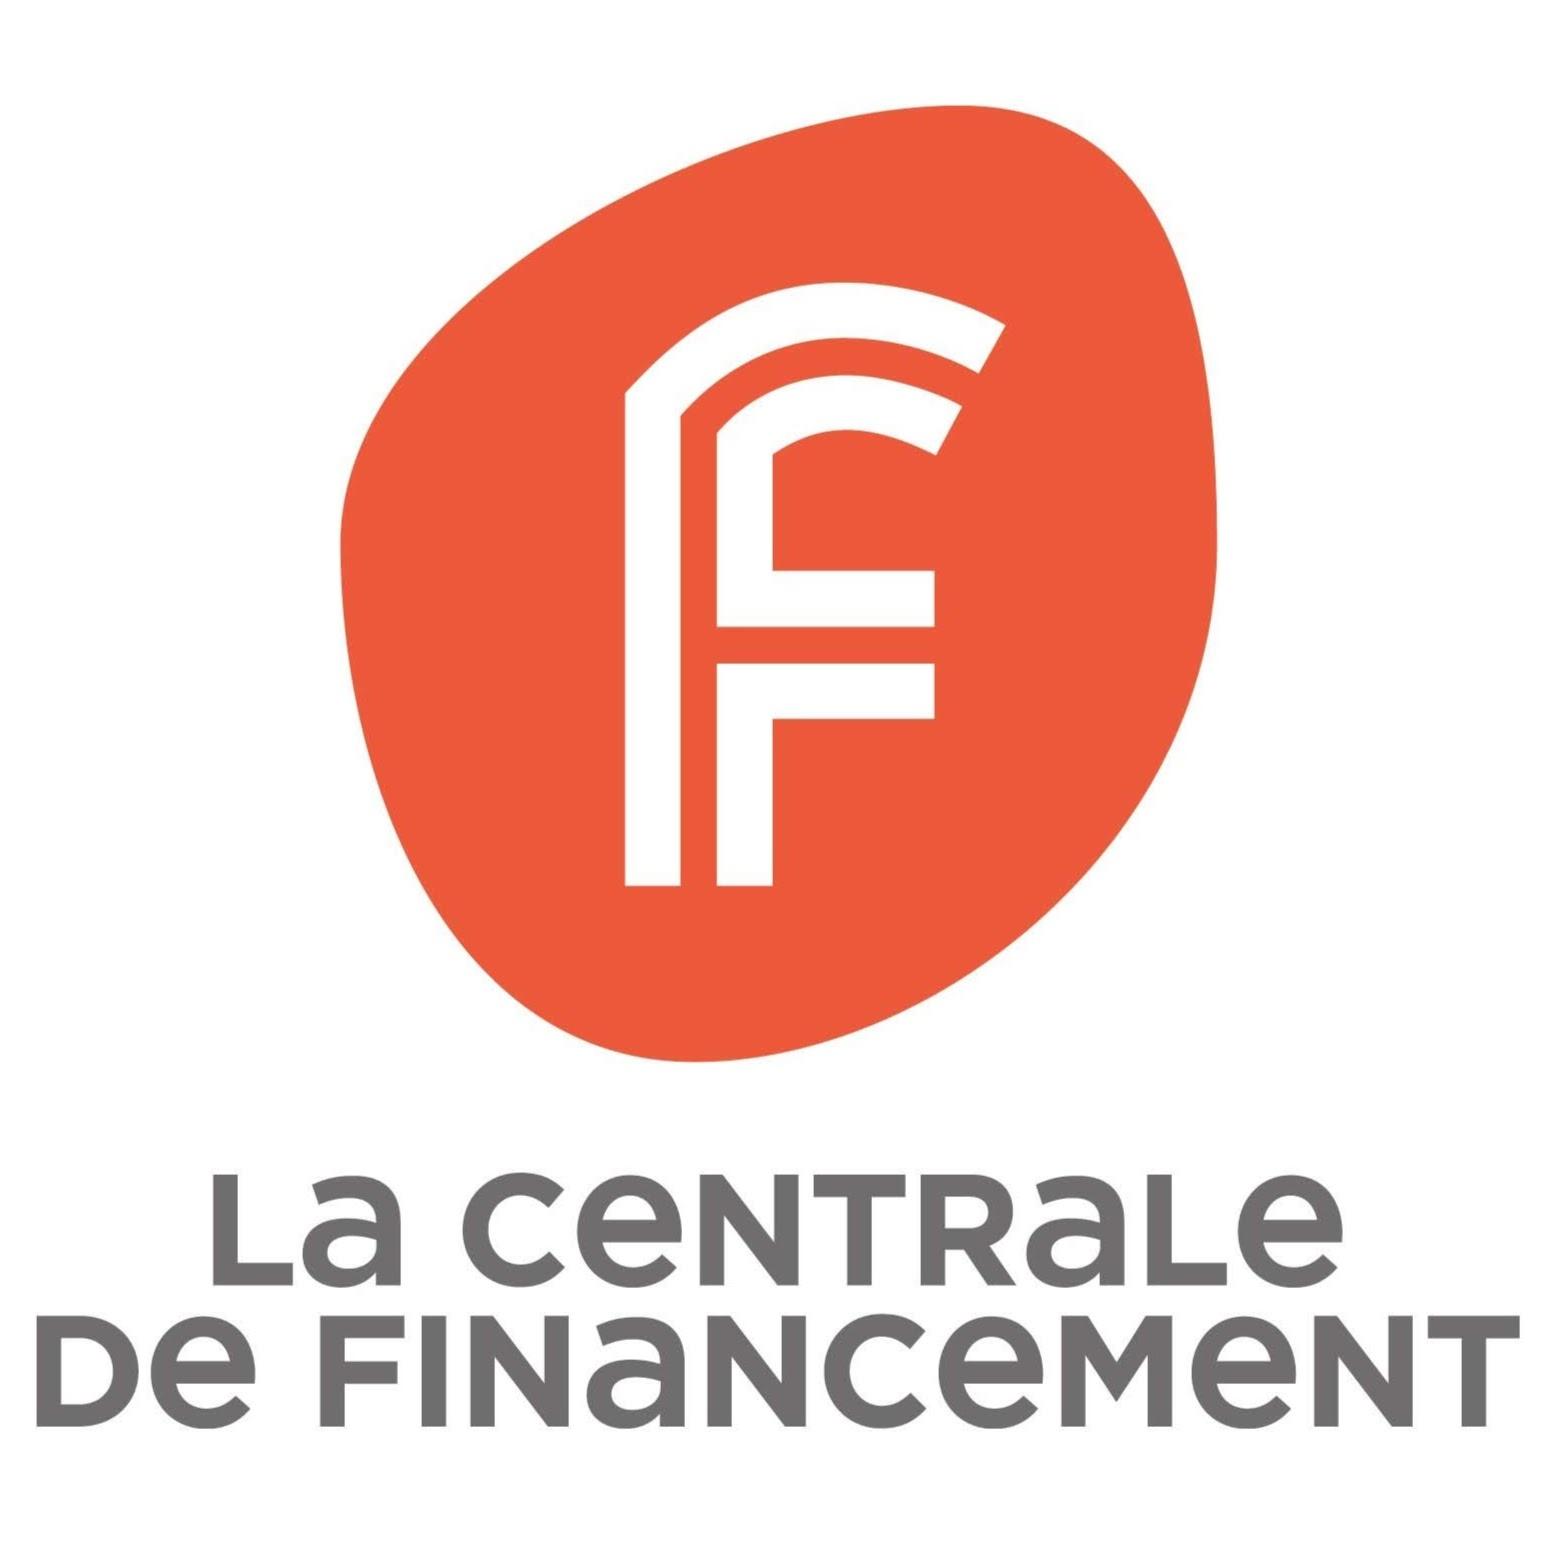 La Centrale De Financement Orléans